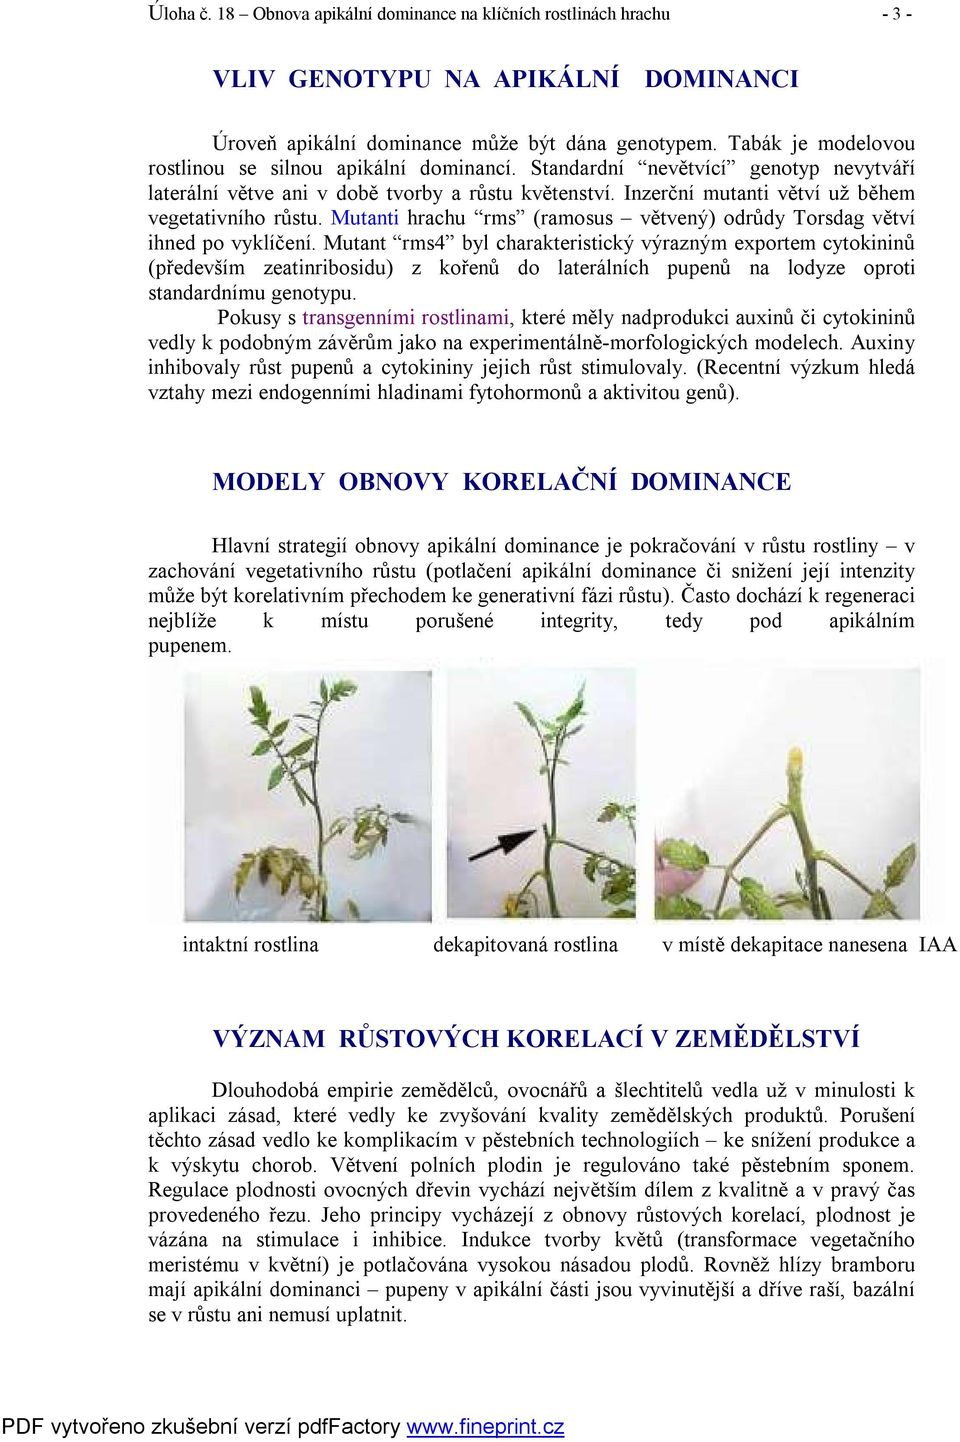 Inzerční mutanti větví už během vegetativního růstu. Mutanti hrachu rms (ramosus větvený) odrůdy Torsdag větví ihned po vyklíčení.